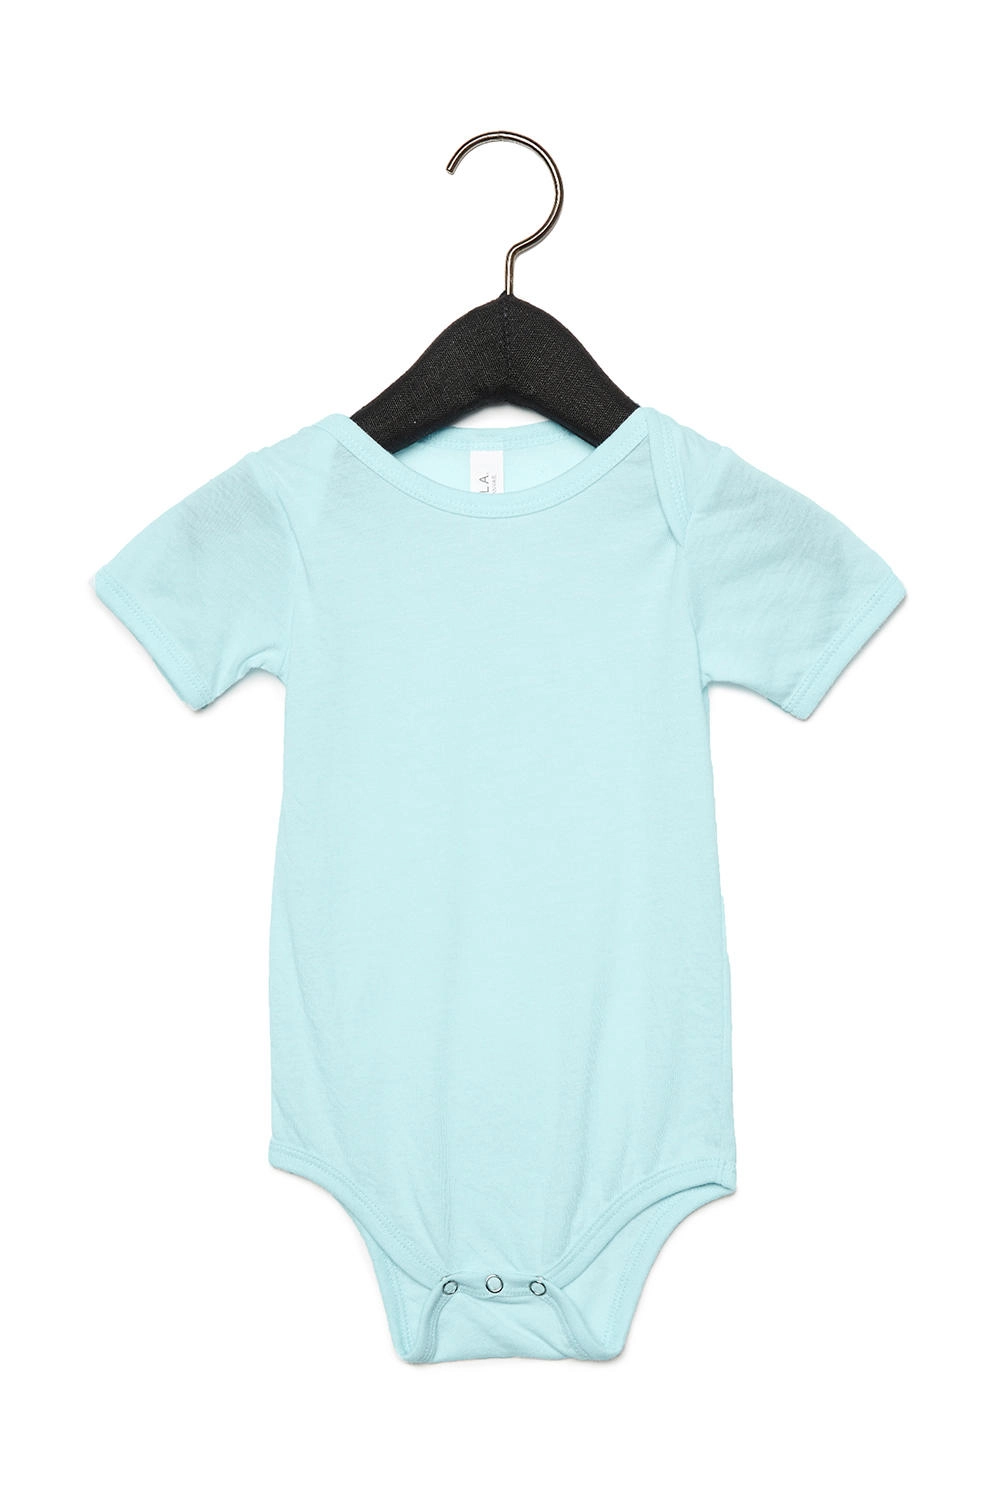 Baby Triblend Short Sleeve Onesie zum Besticken und Bedrucken in der Farbe Ice Blue Triblend mit Ihren Logo, Schriftzug oder Motiv.